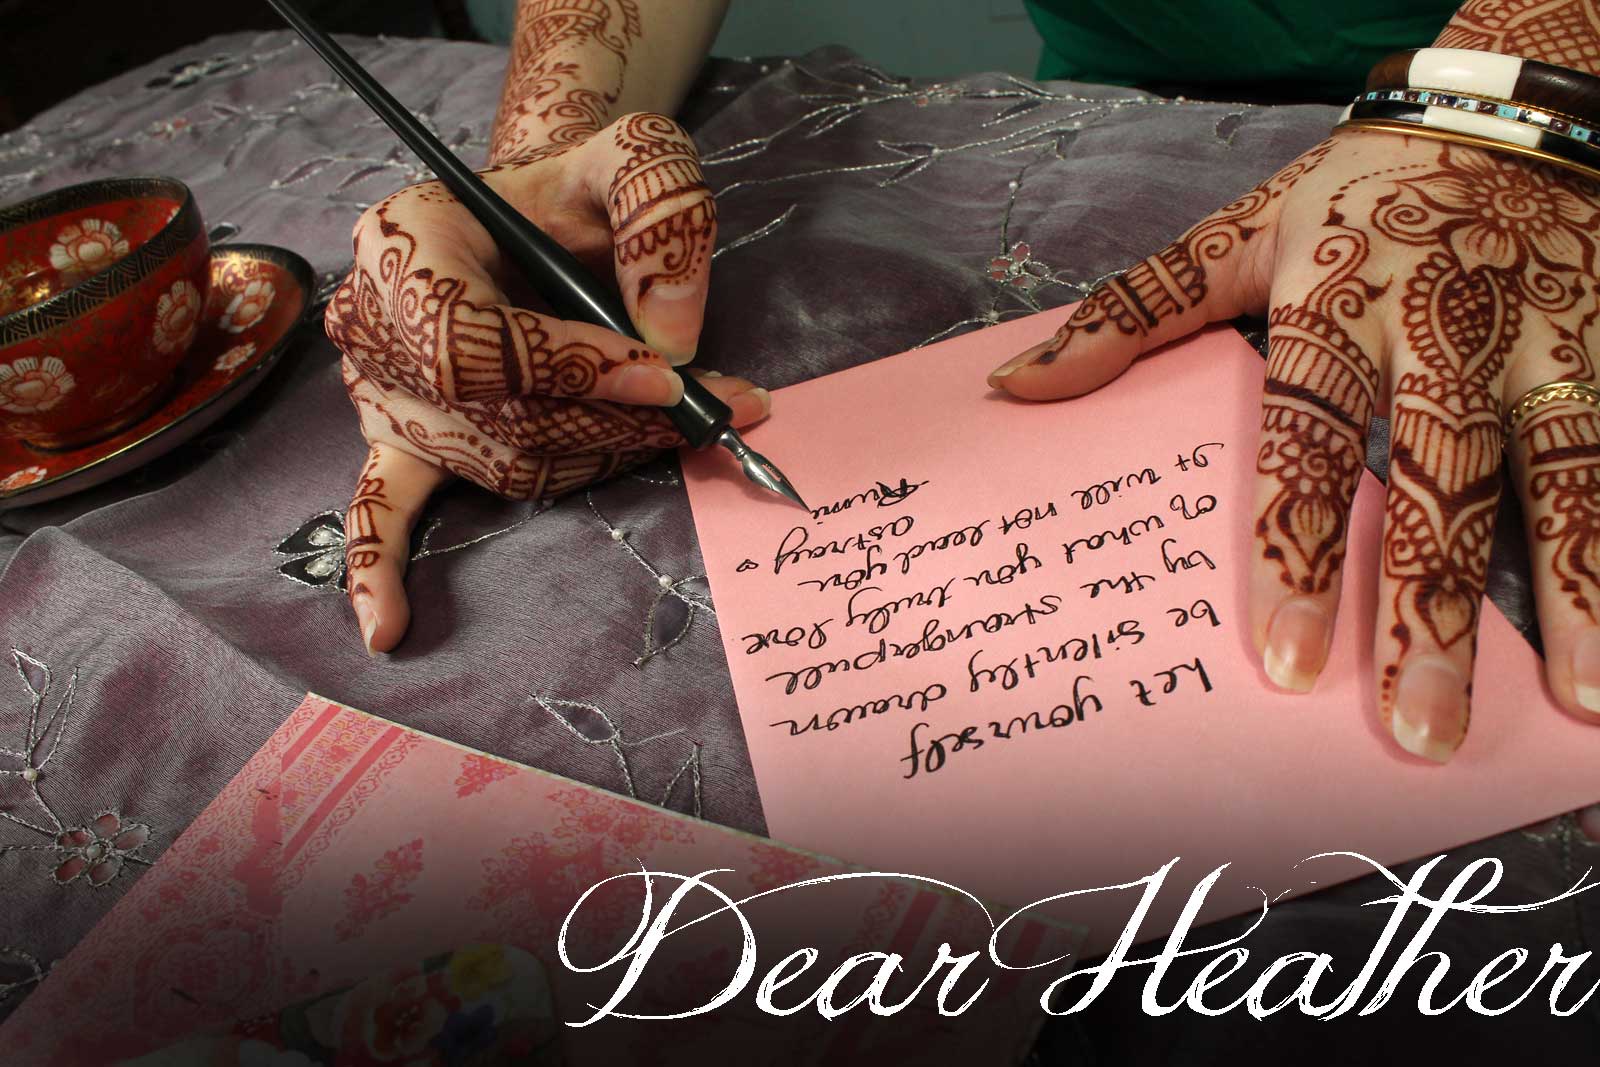 Dear Heather - Henna Artist Advice